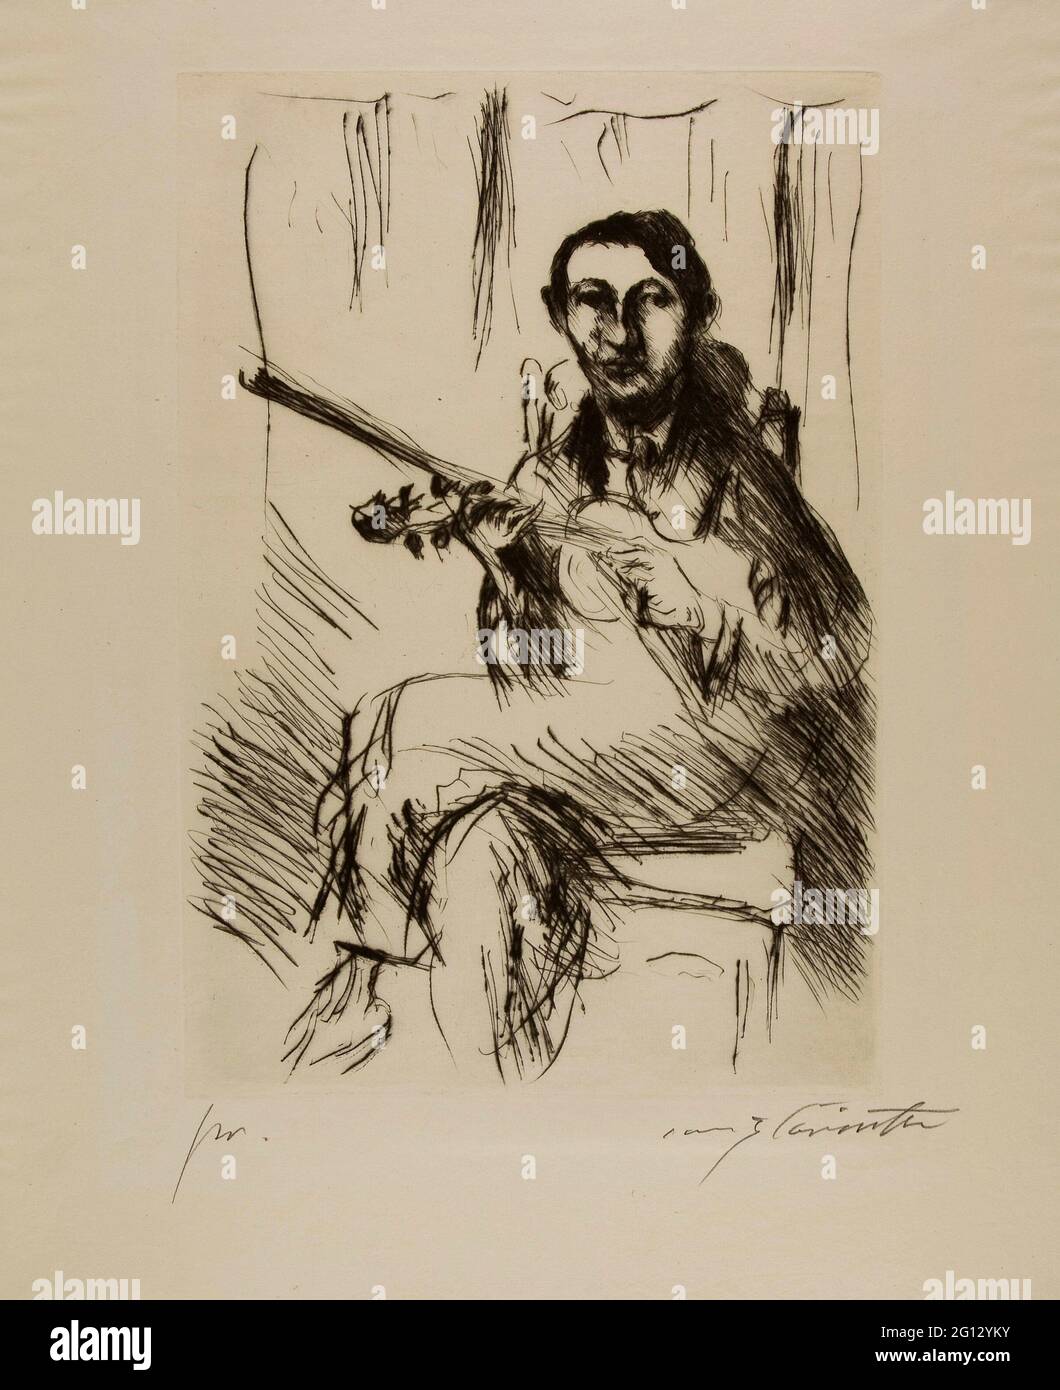 Lovis Corinto. Guitarrista - 1919 - Lovis Corinth Alemán, 1858-1925. DRYPOINT sobre papel de color crema. Alemania. Foto de stock